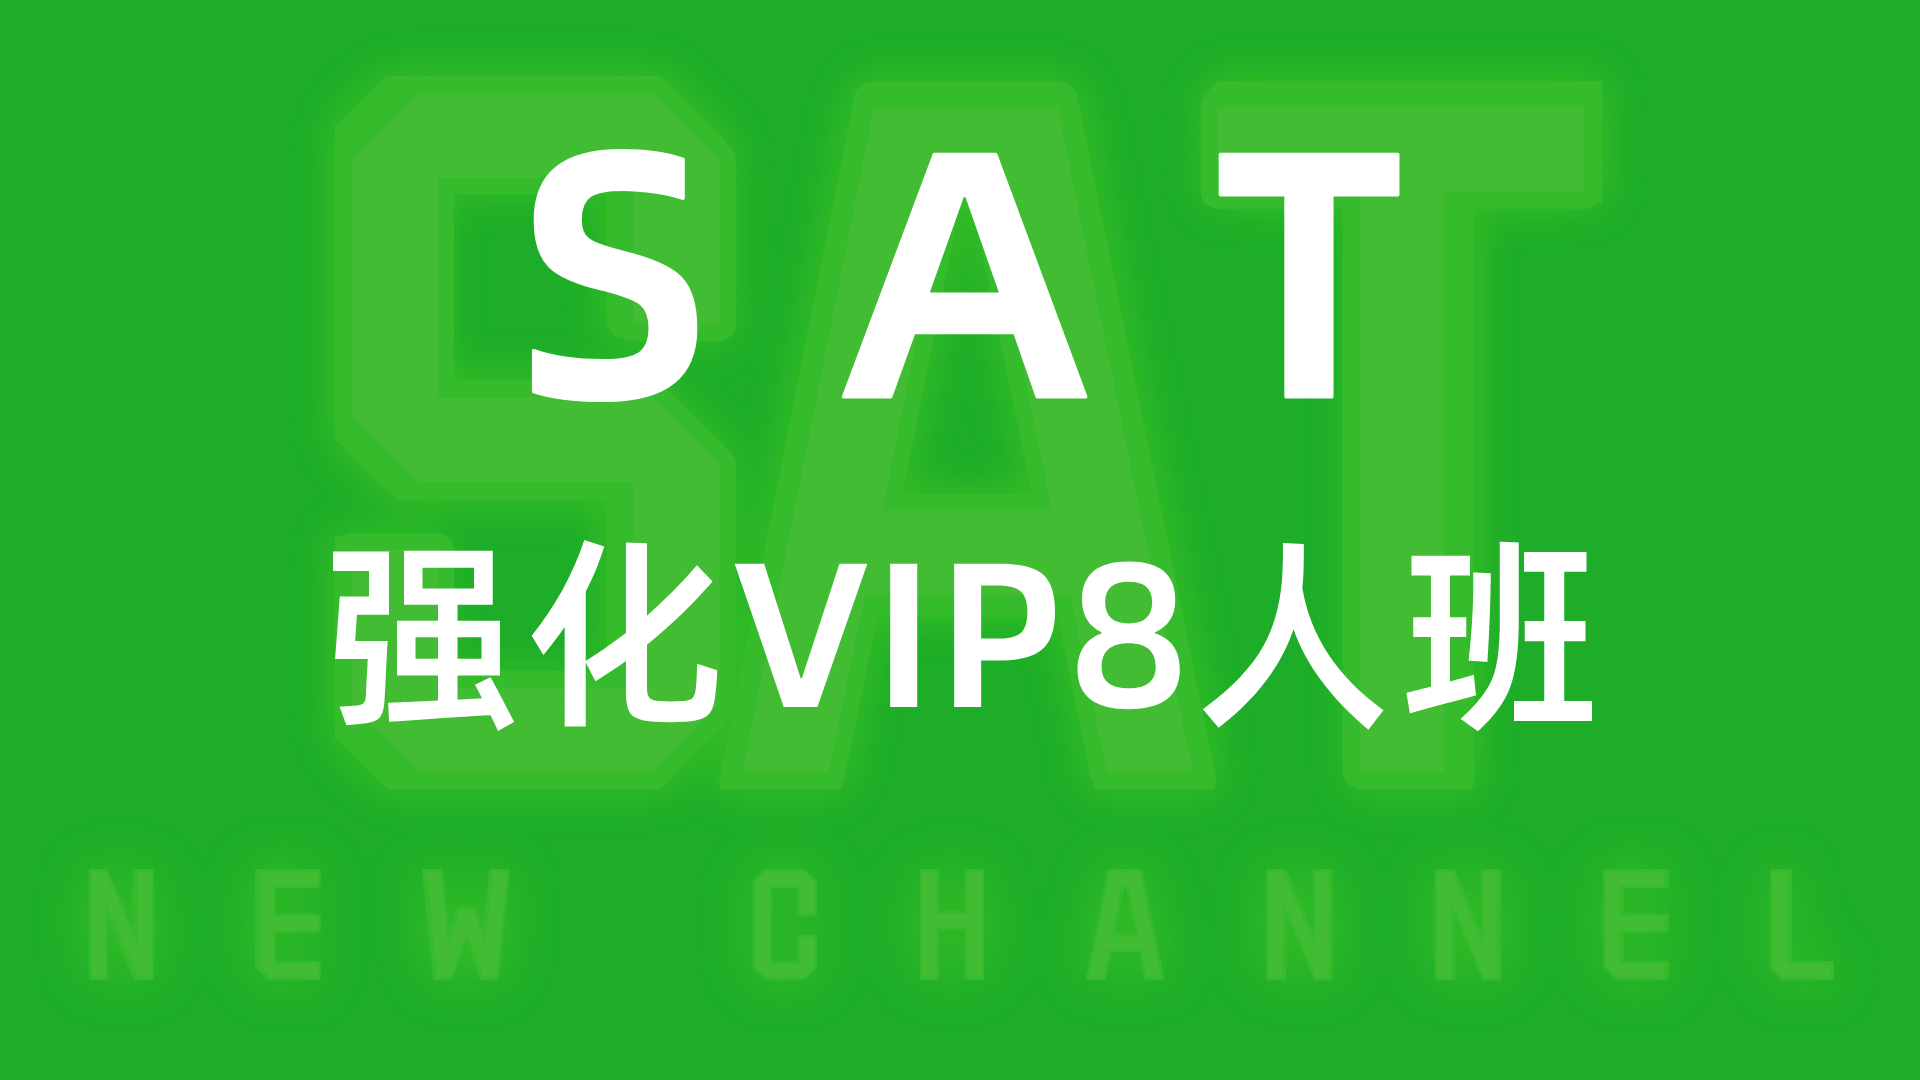 SAT强化VIP8人班